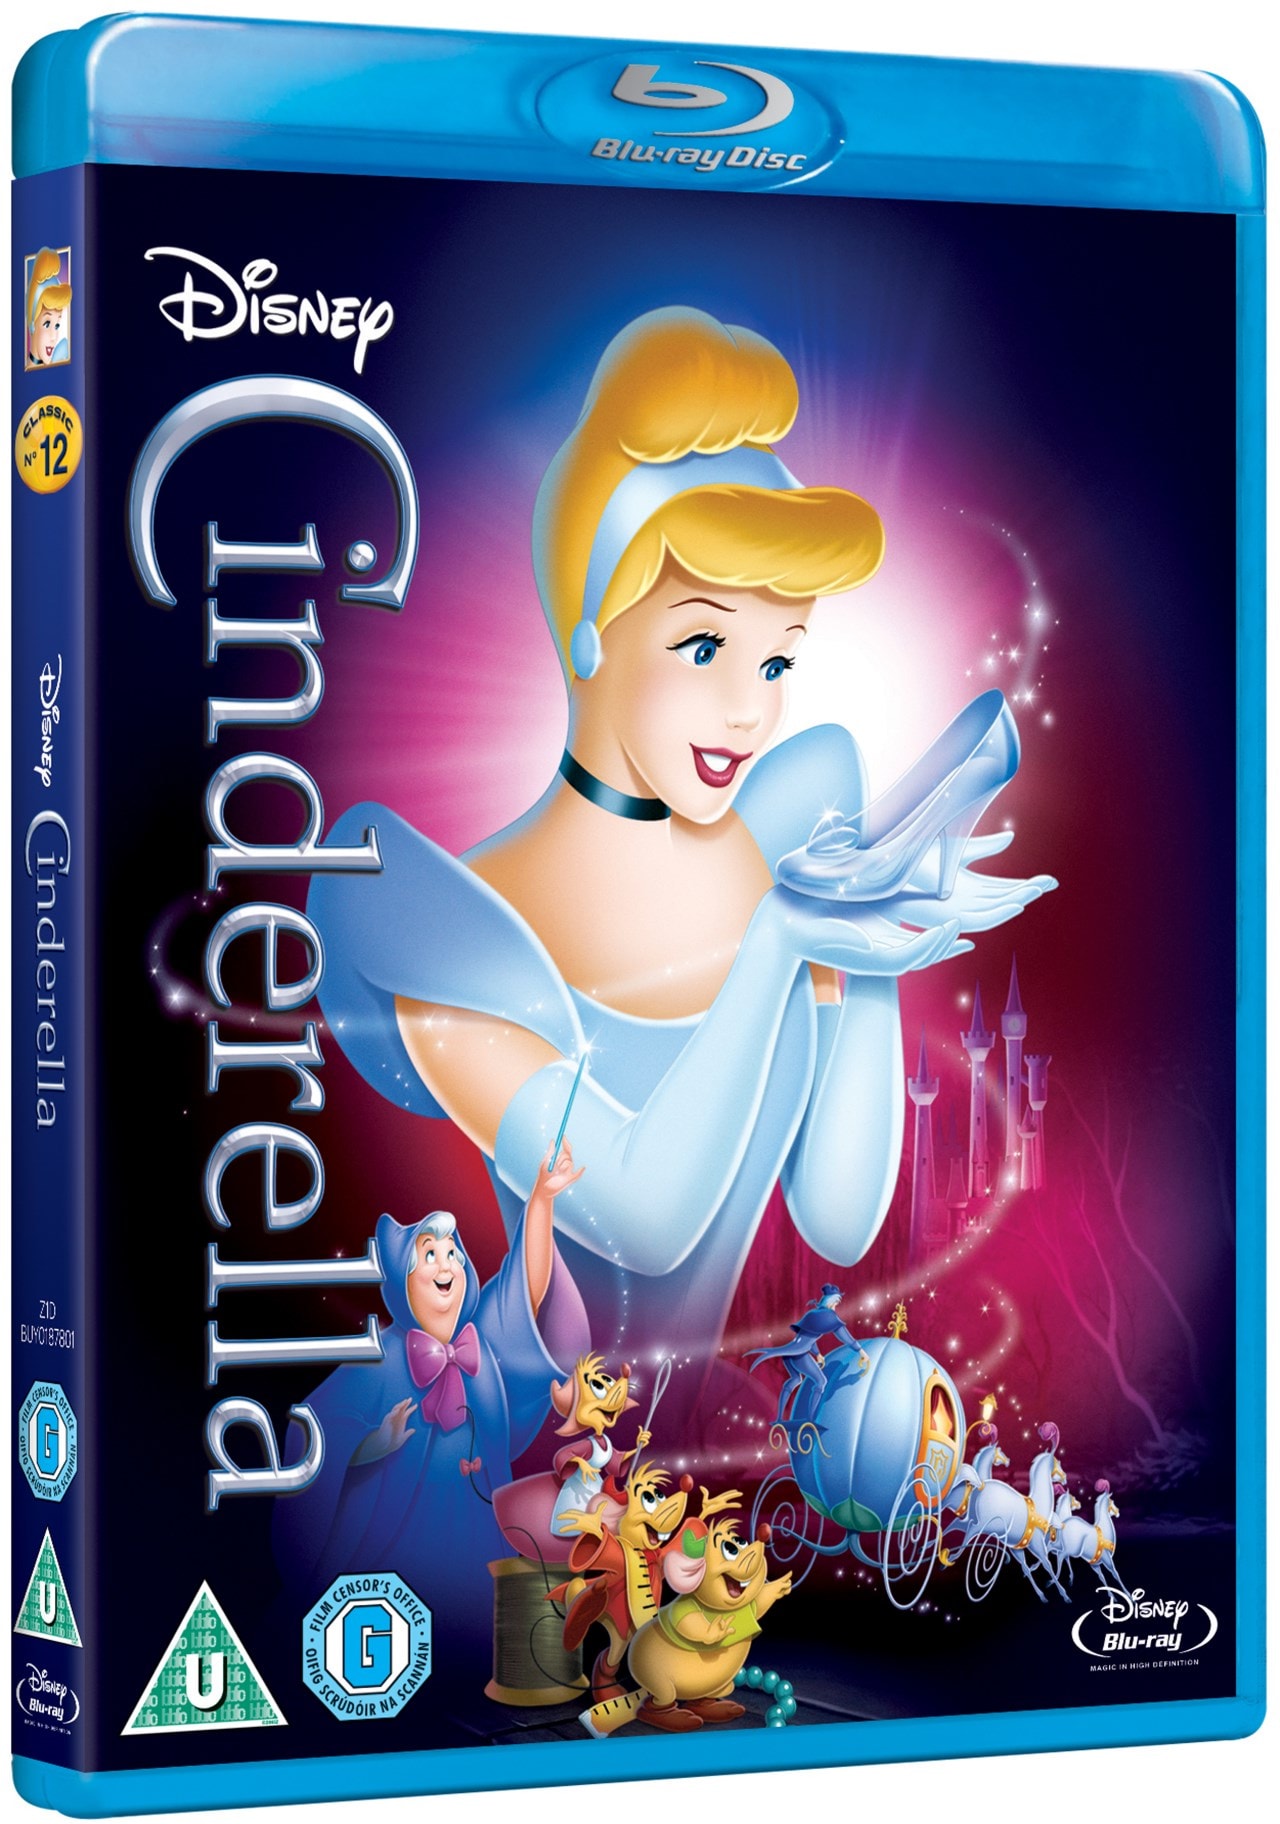 Дисней диск. Дисней Blu-ray. Disney Blu ray Disc. Disney Blu ray lntro. Disney DVD Blu ray.